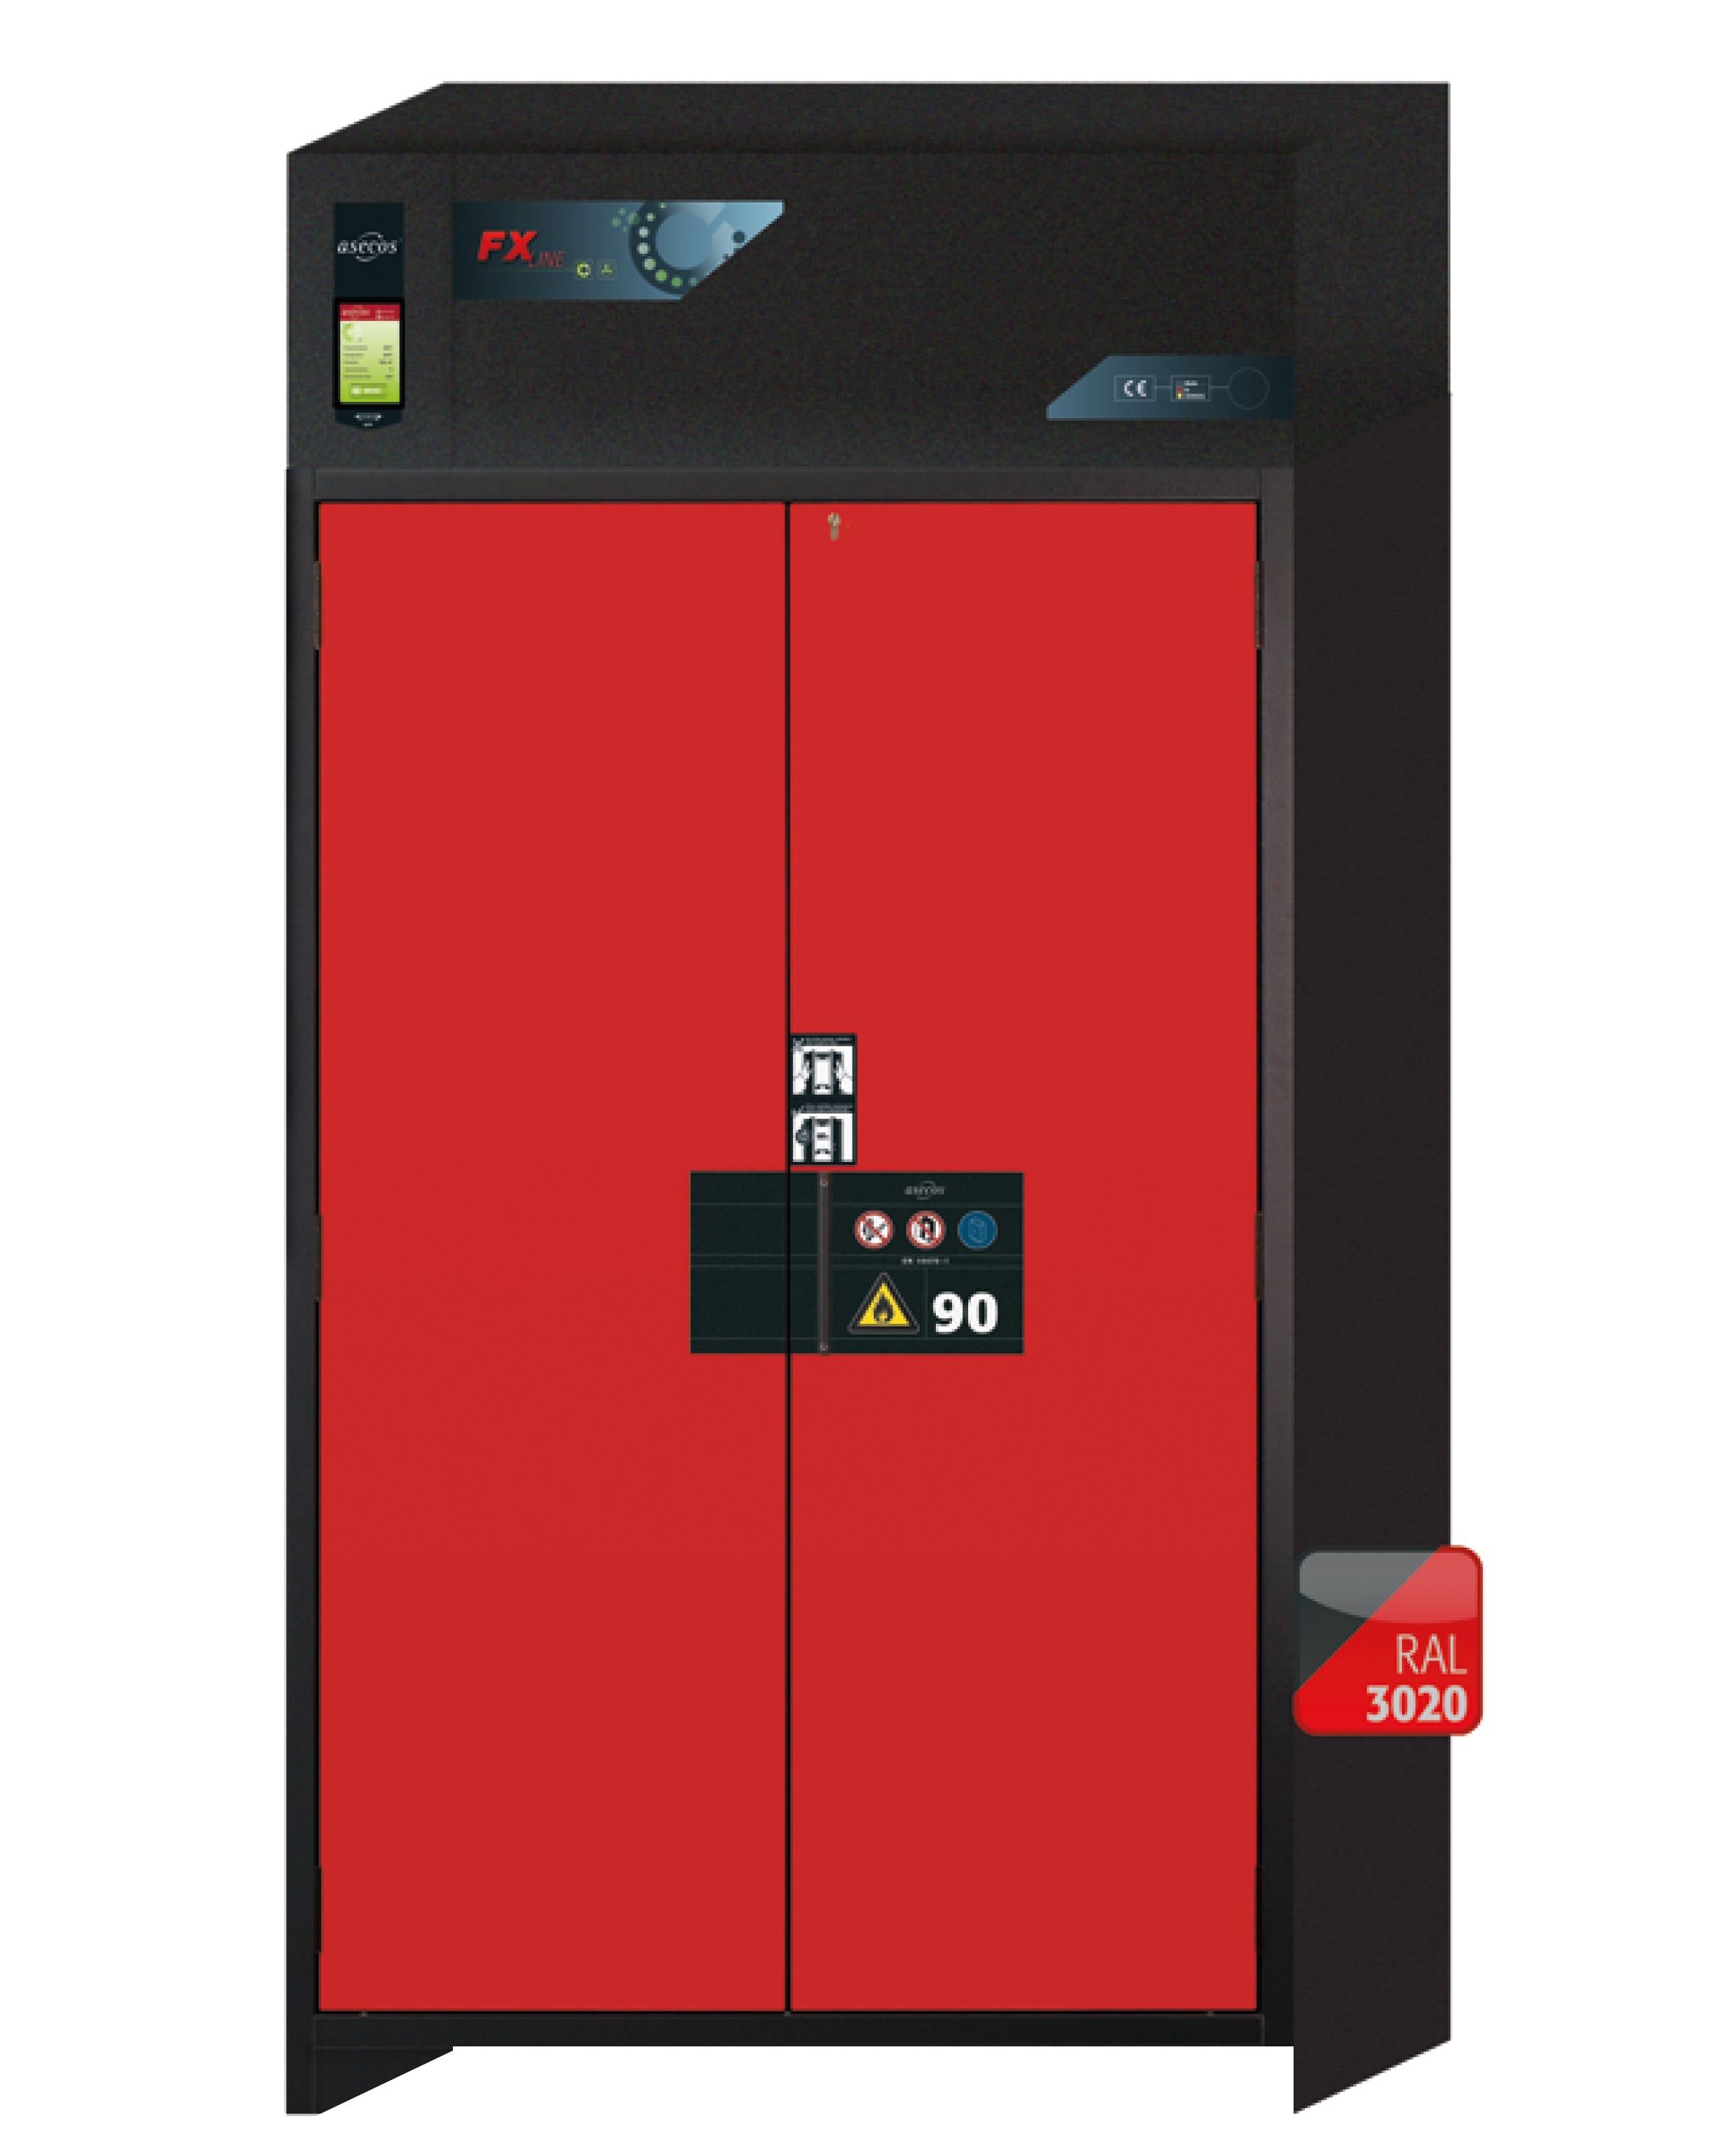 Armoire de filtration d'air recyclé type 90 FX-PEGASUS-90 modèle FX90.229.120.WDAC en rouge signalisation RAL 3020 avec 2 plateaux coulissants standard (tôle d'acier)